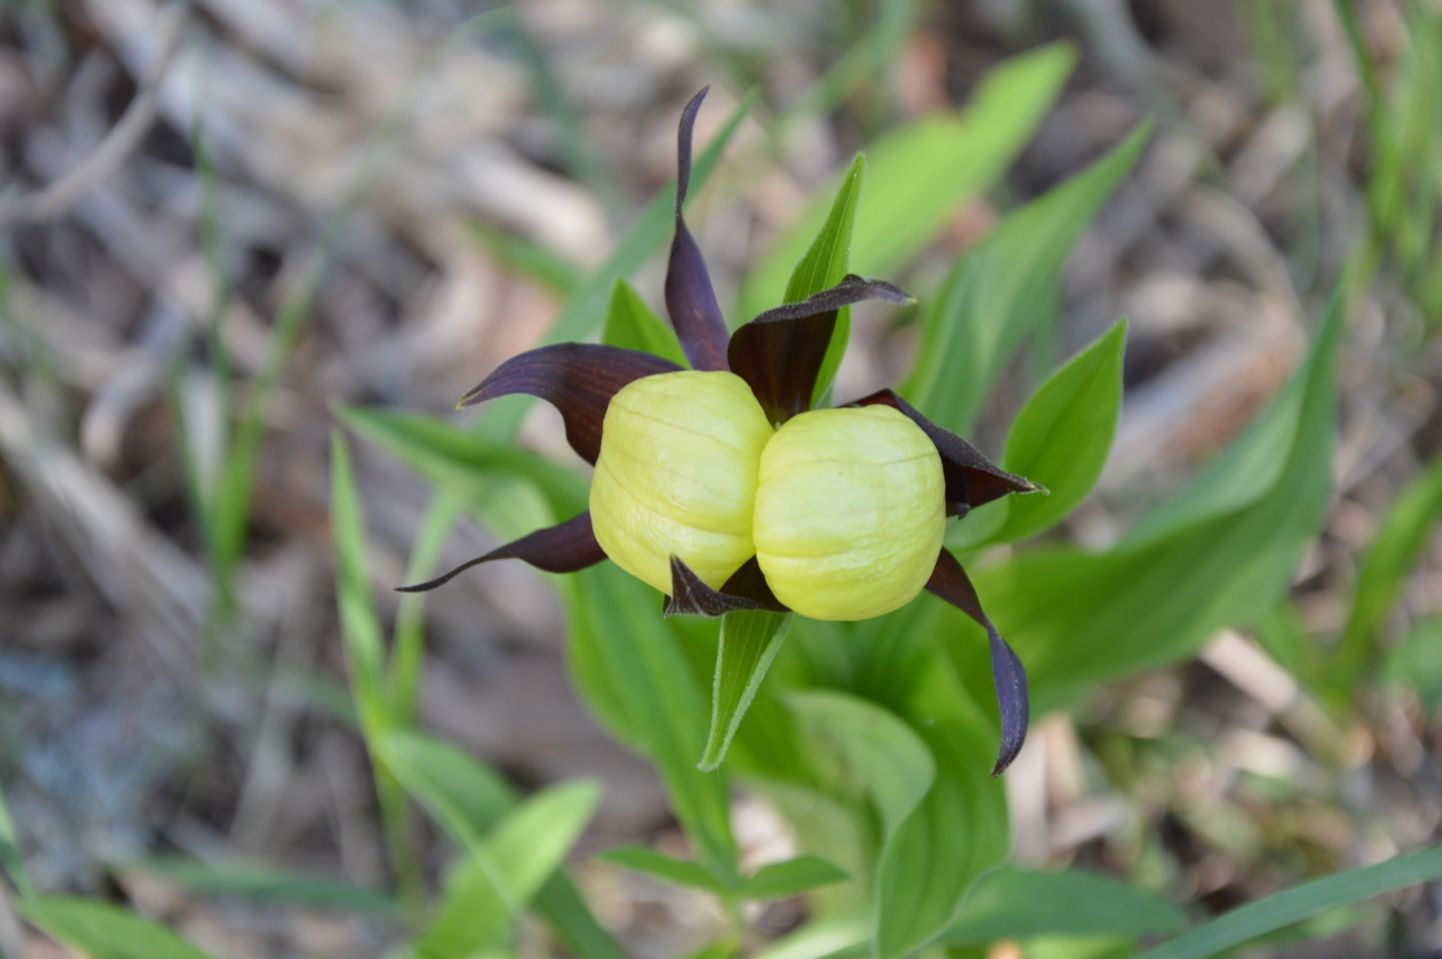 Eesti orhideekaitse klubi aasta orhideeks valitud kauni kuldkinga üks suurimaid kasvukohti Eestis asub Lääneranna vallas.